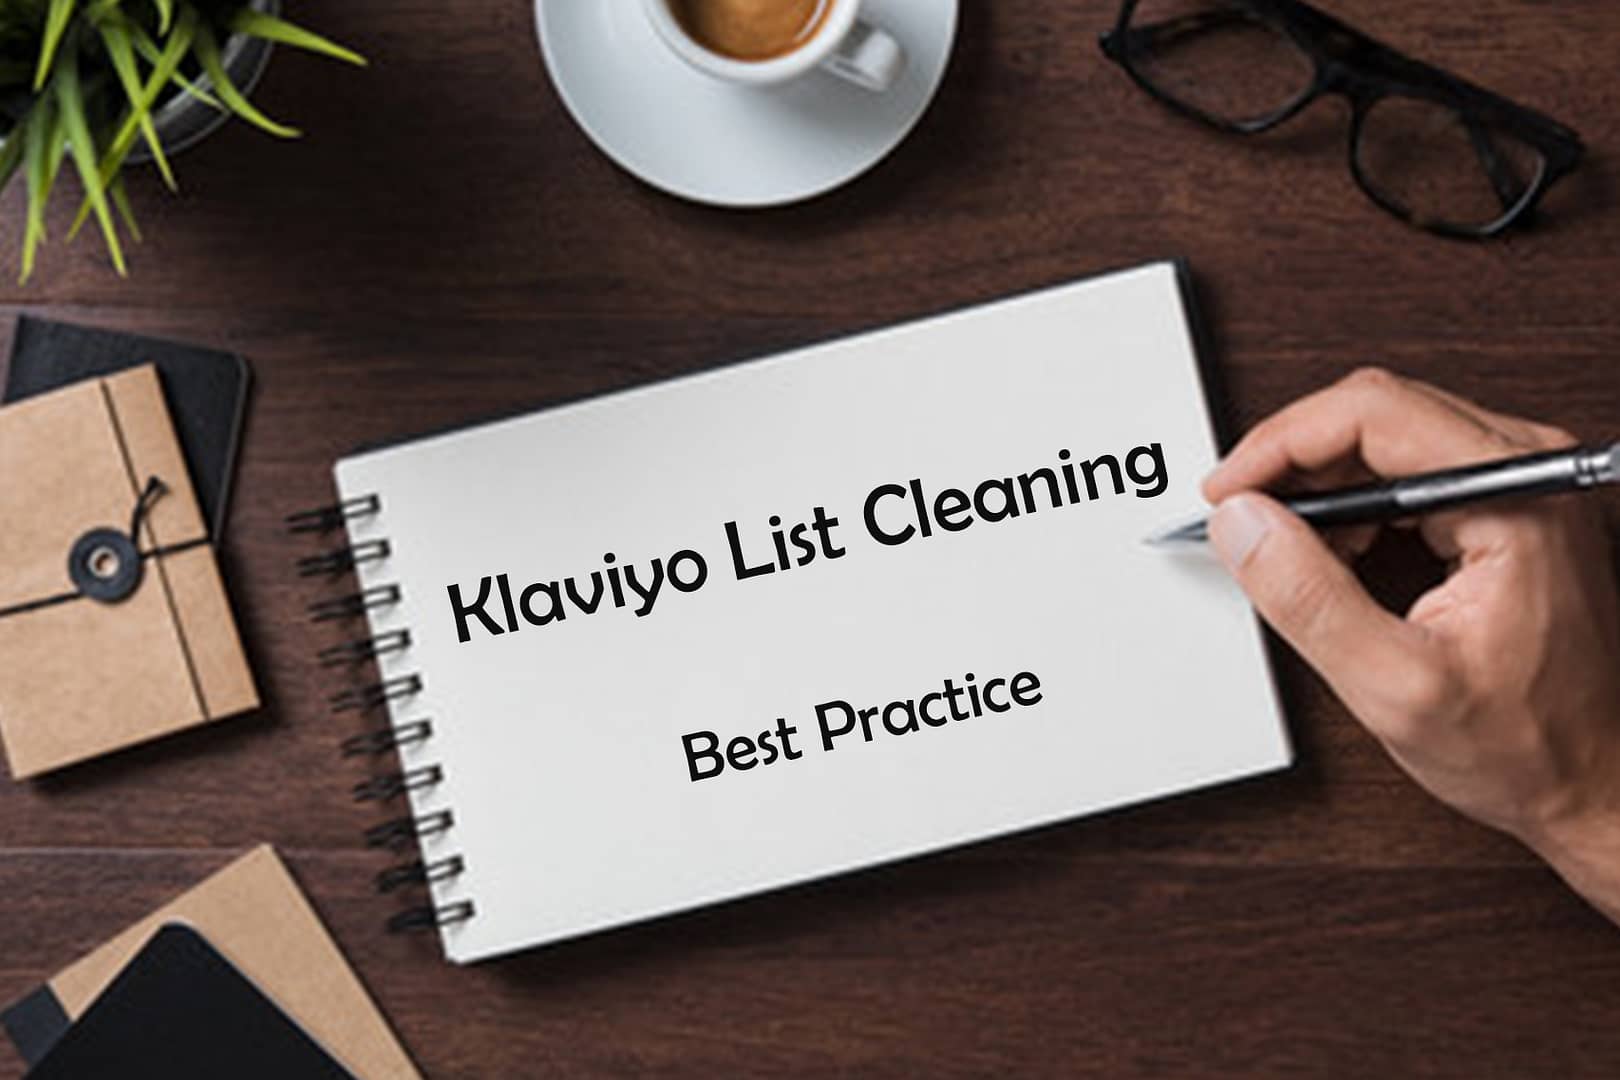 Klaviyo List Cleaning best practice